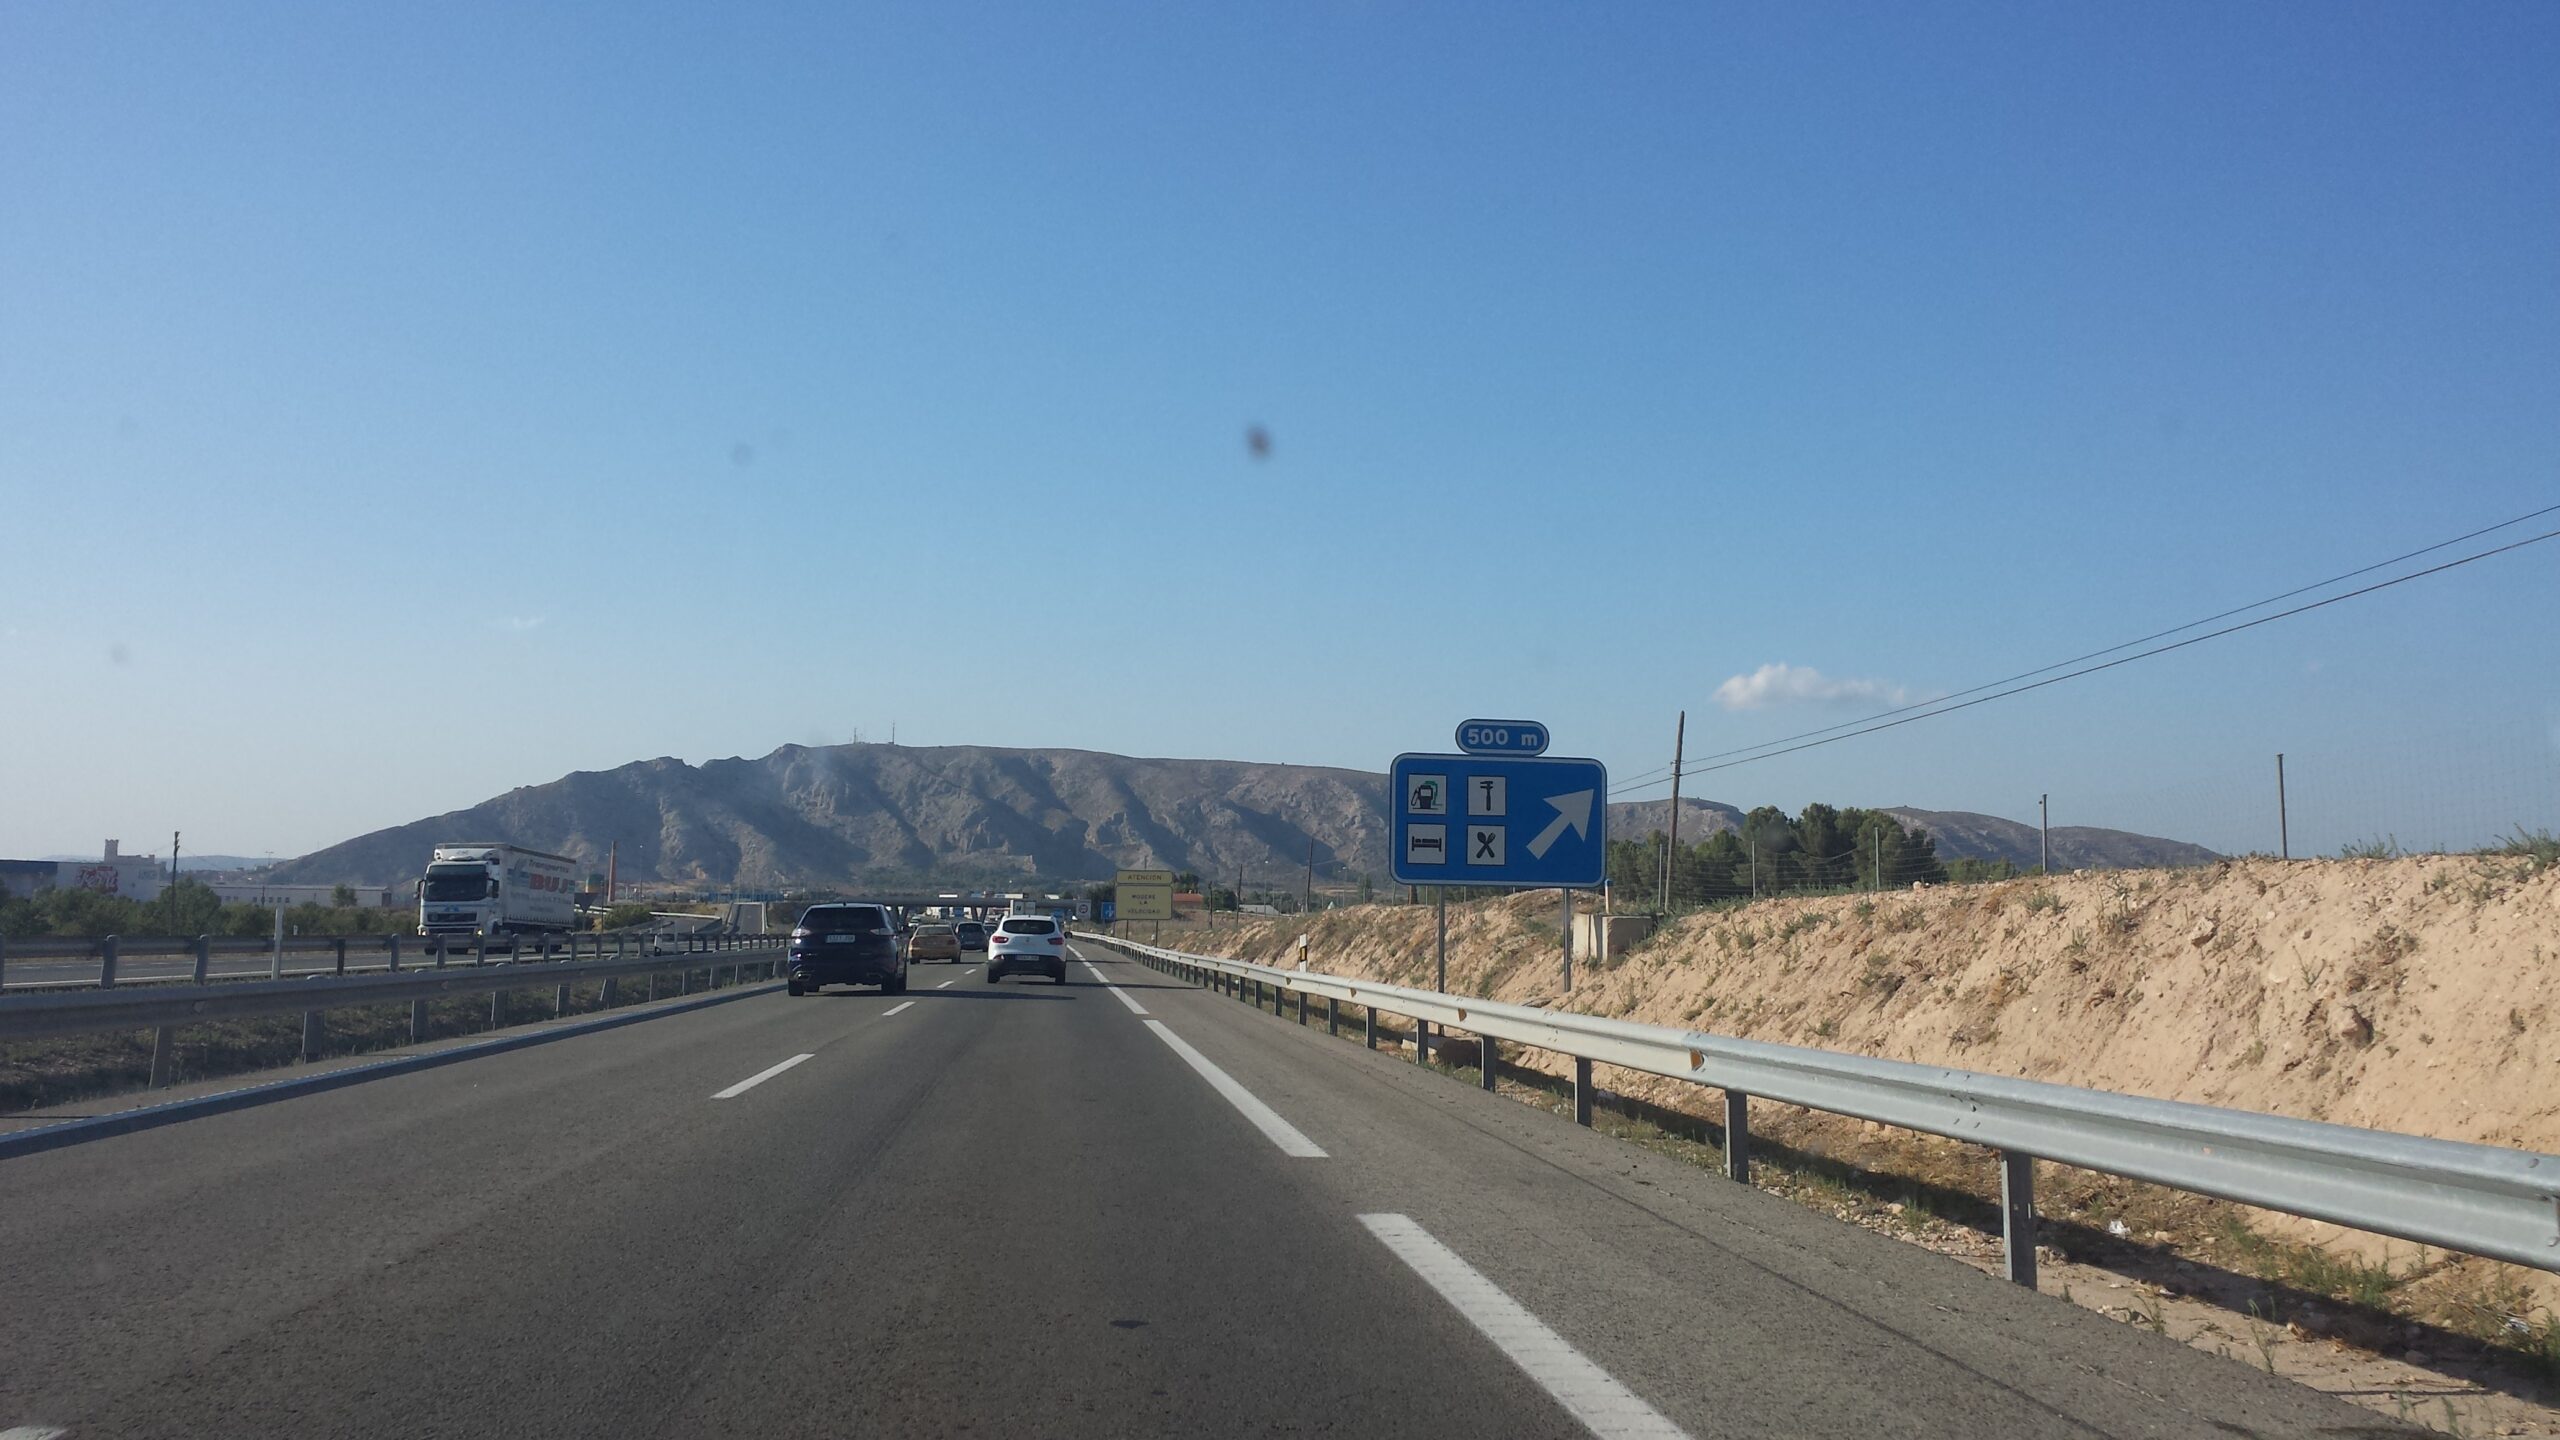 209 conductores pasan a disposición judicial en la Comunidad Valenciana  por delitos contra la seguridad vial